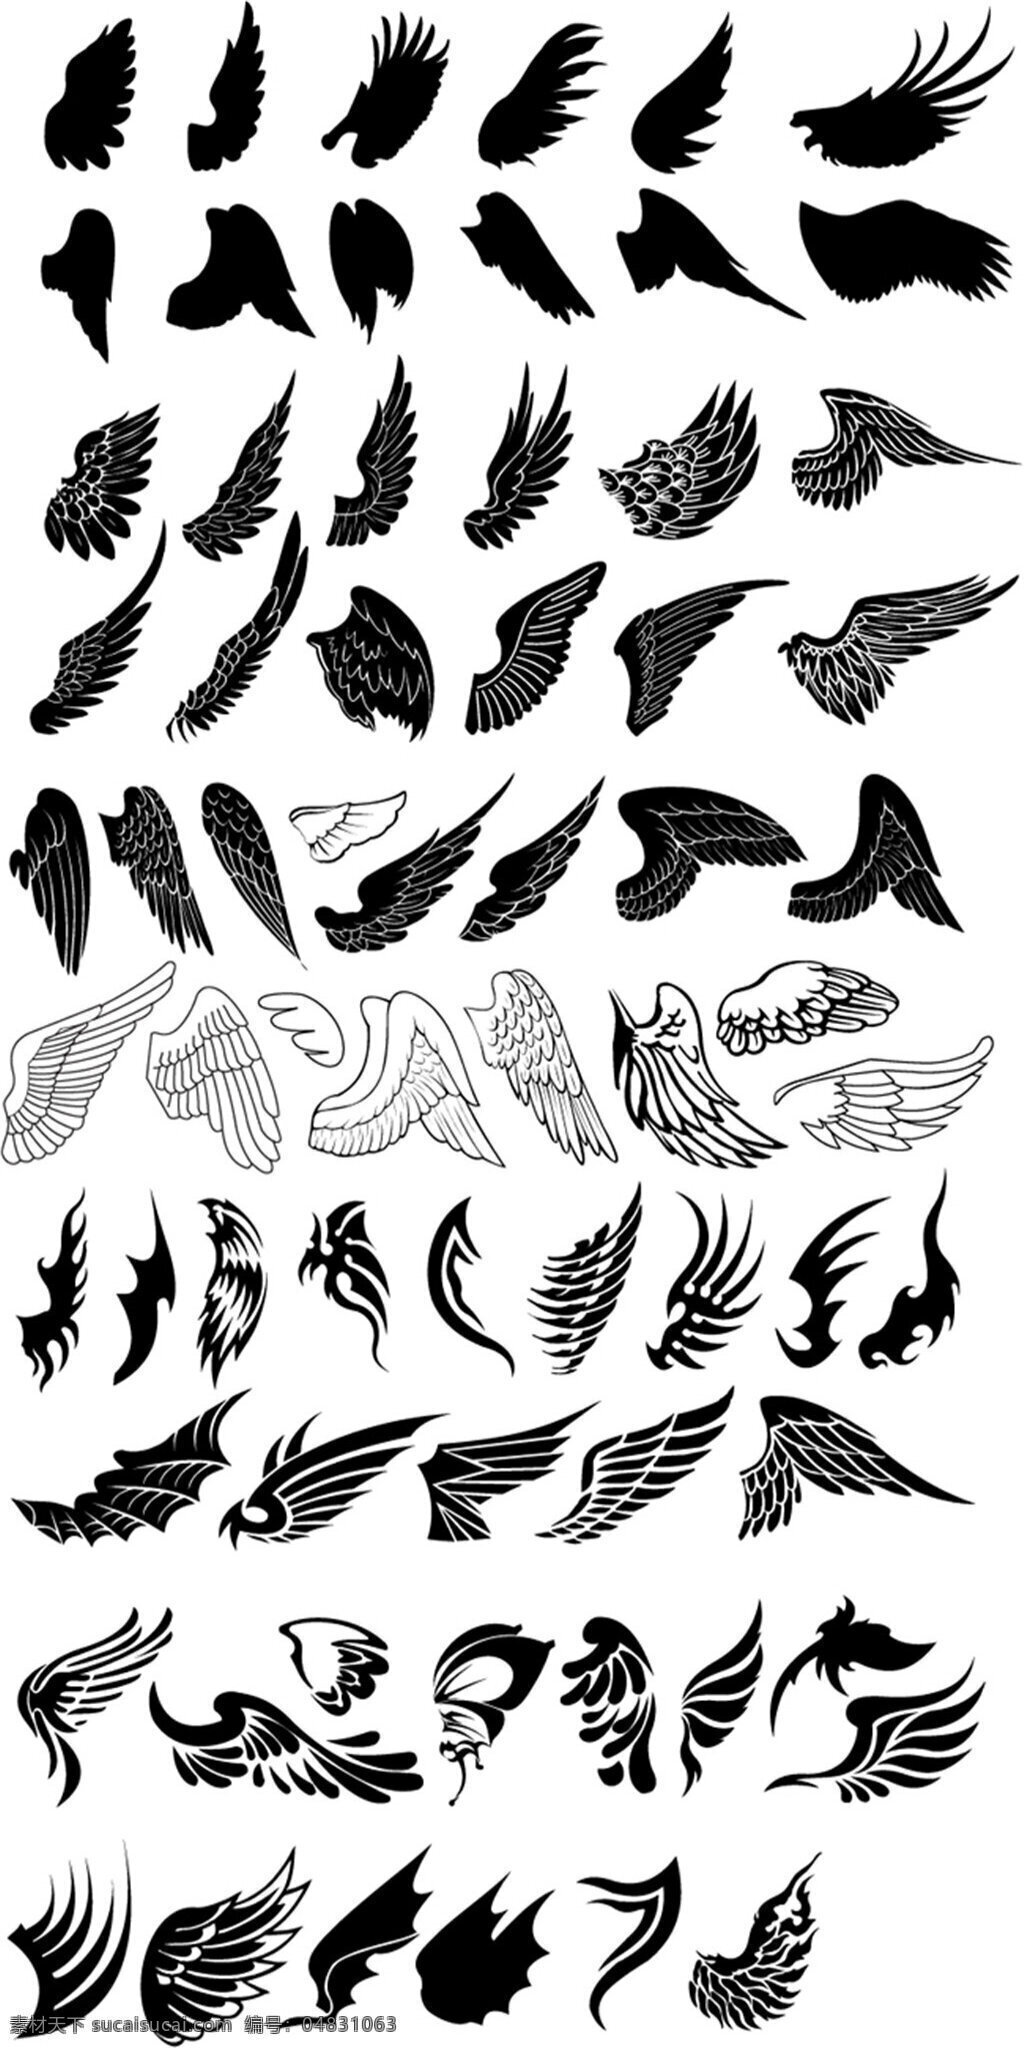 精美 手绘 翅膀 矢量 天使 动物 图标 图案 标签 装饰 插画 背景 海报 画册 矢量动物 生物世界 野生动物